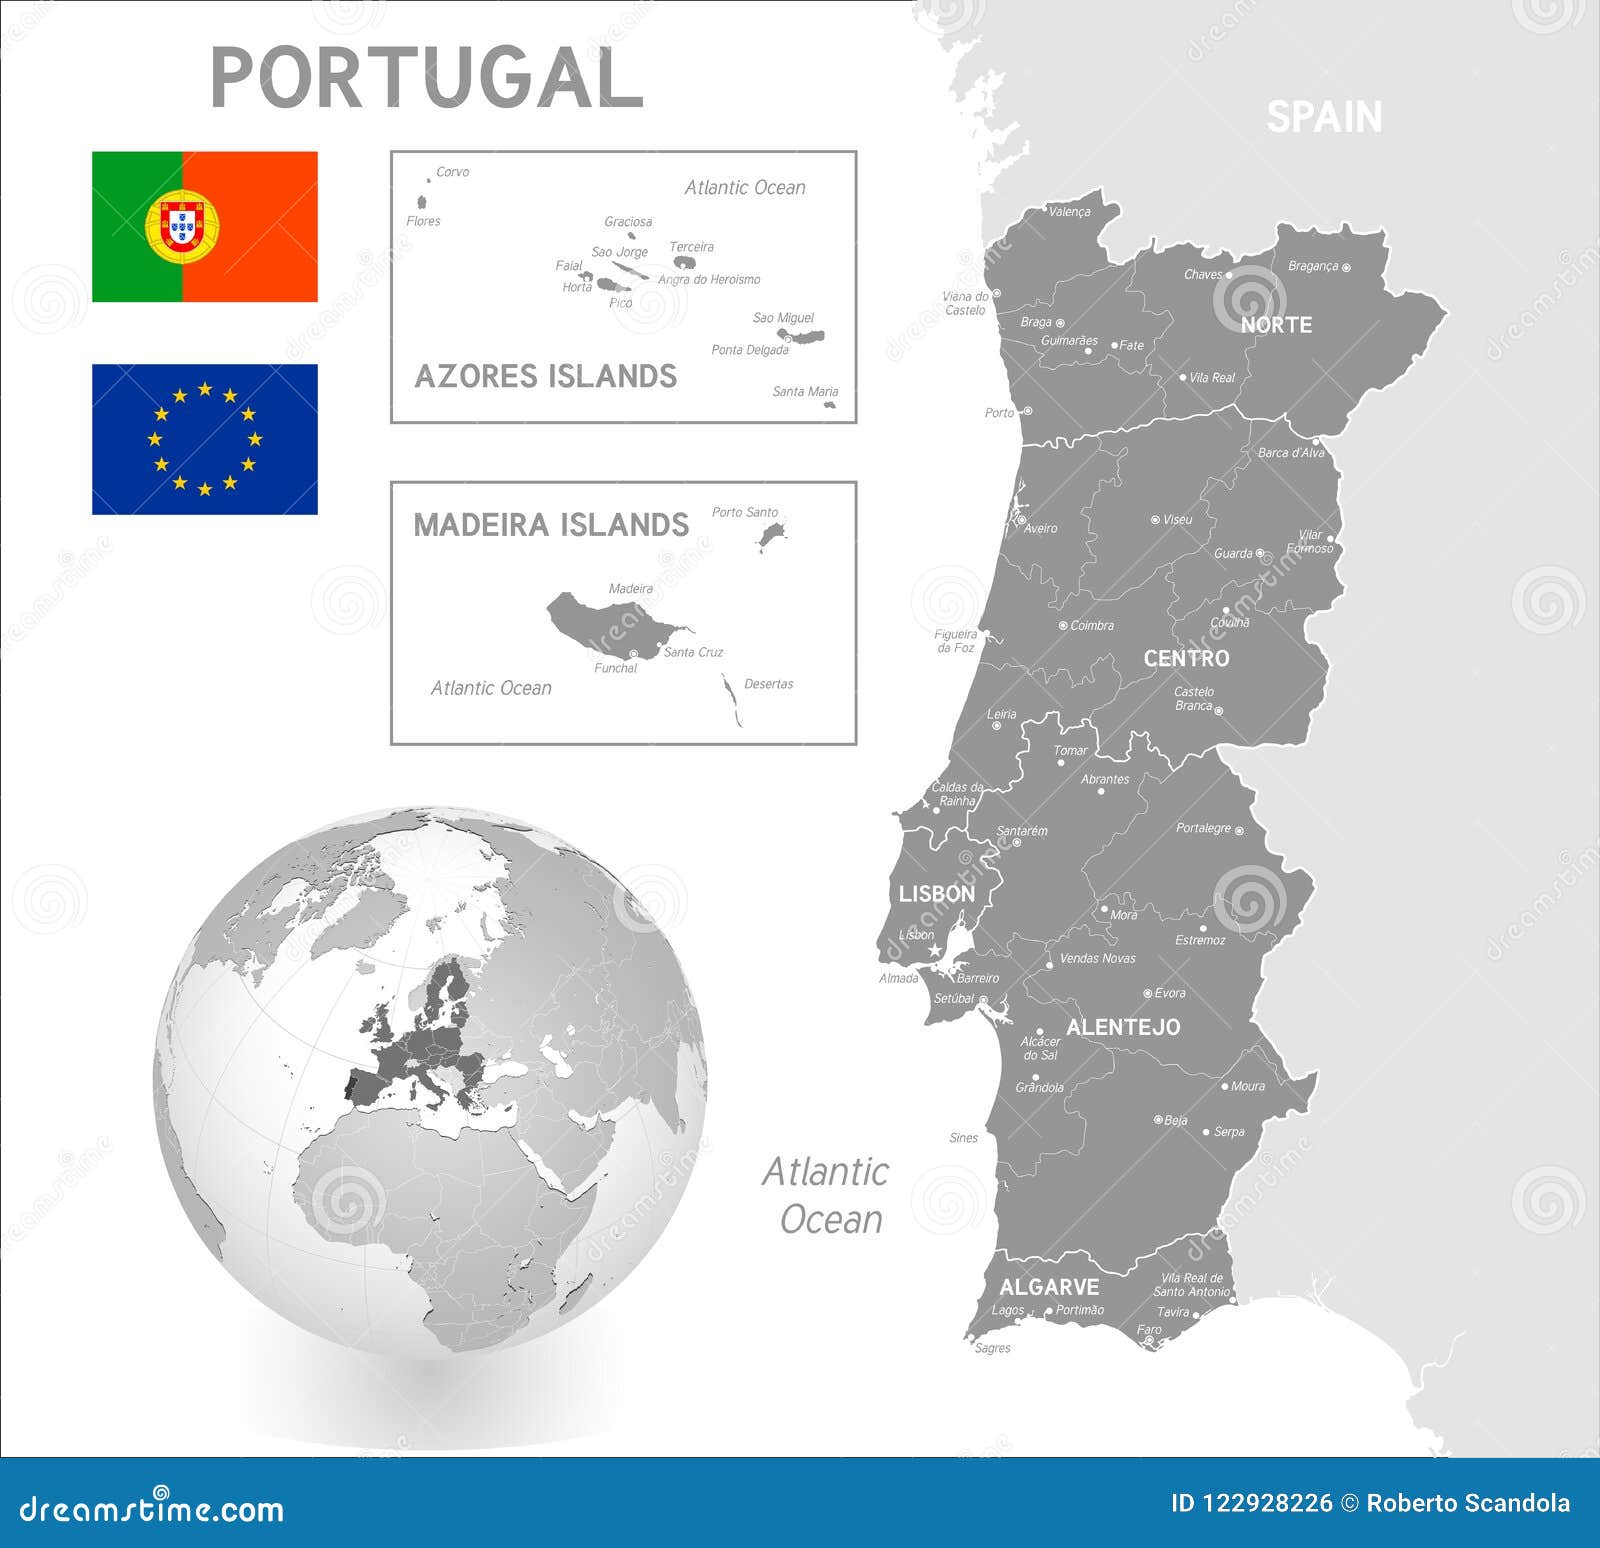 Portugal mapa imagem vetorial de Volina© 1173247